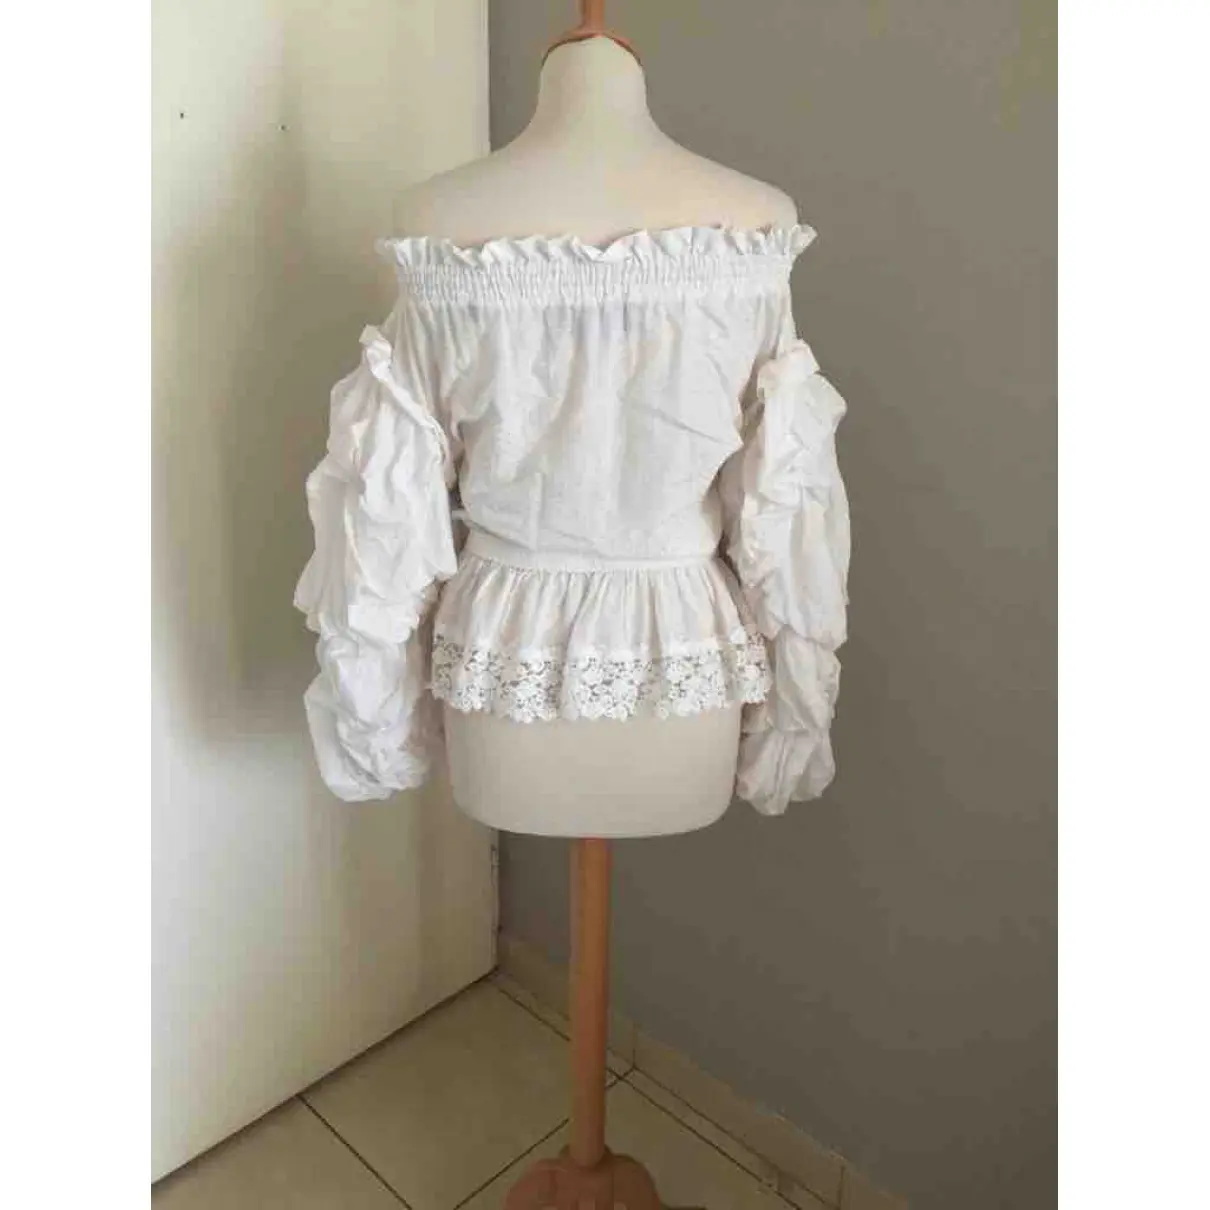 Buy The Kooples Spring Summer 2020 silk blouse online